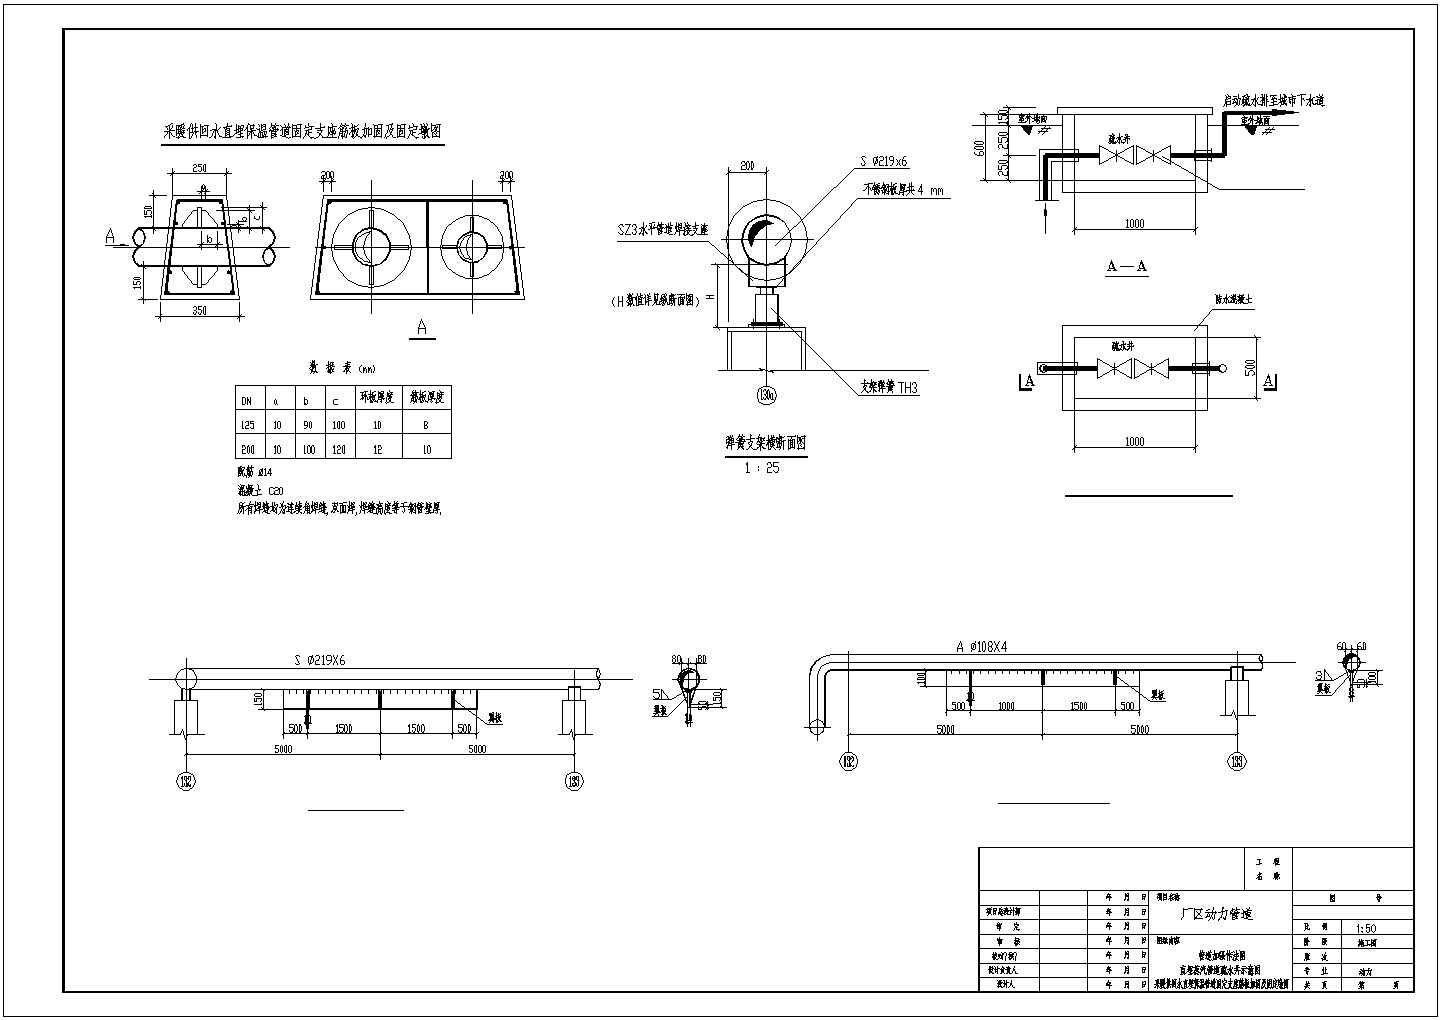 某厂区蒸汽热水管道工程全套施工设计cad图纸(含管道布置图)